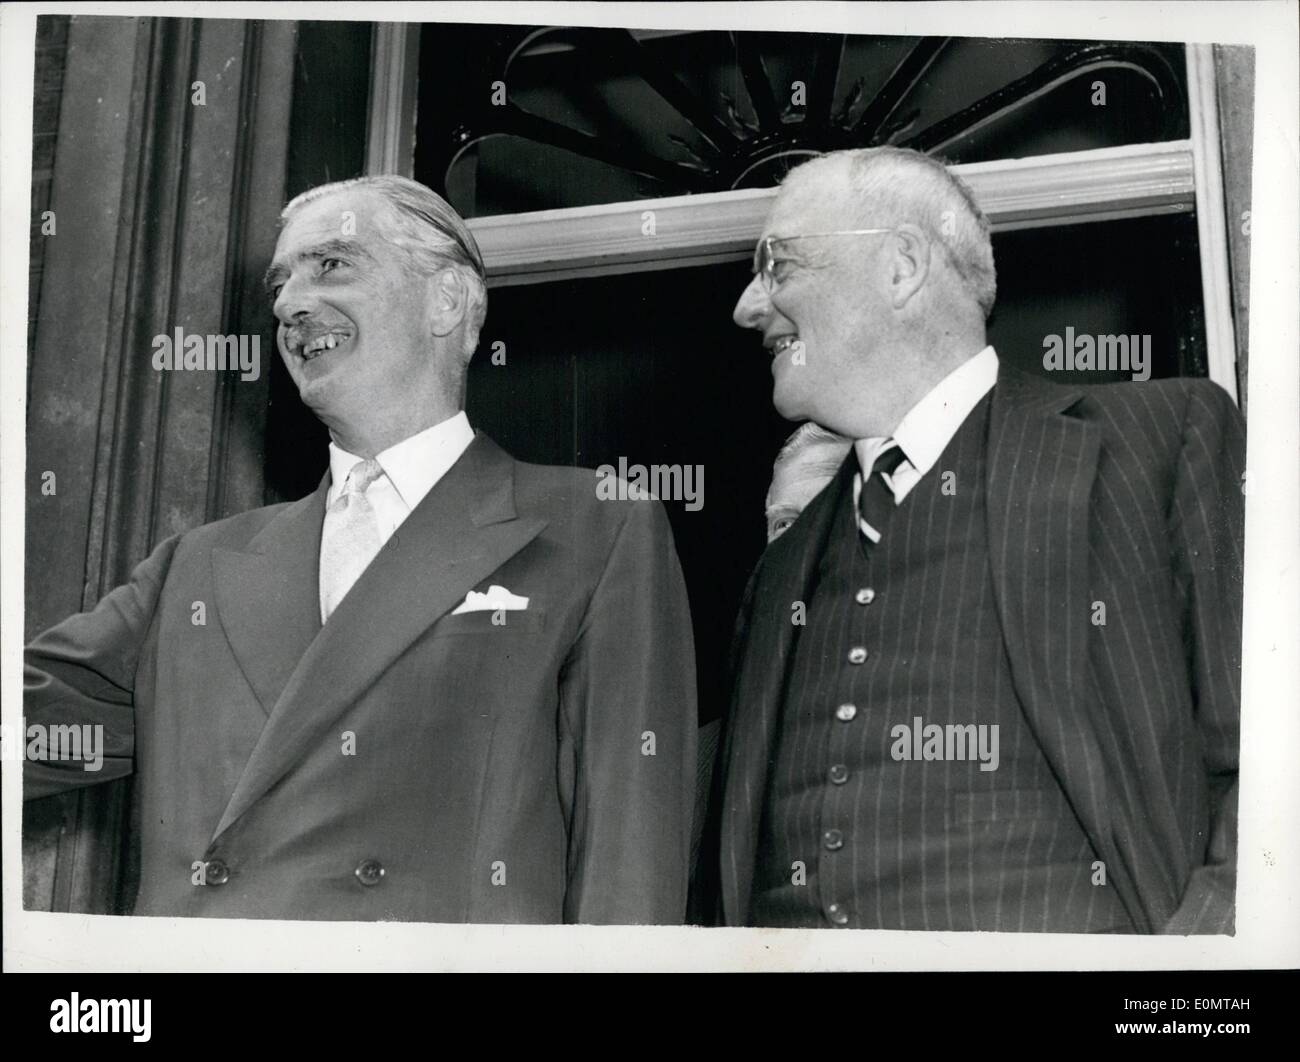 15 août 1956 - 15-8-56... M. Dulles et Sir Anthony Eden Au n°10... M. John Foster Dulles, le secrétaire d'État des États-Unis - qui représente son pays à la conférence du Canal de Suez- demandé au premier ministre au 10, Downing Street- peu après son arrivée à Londres aujourd'hui. Photo : Keystone montre- M. Dulles et Sir Anthony Eden sur les étapes au n°10- cet après-midi après un déjeuner ensemble... Le NSI/Keystone TF/RC/660127 Banque D'Images